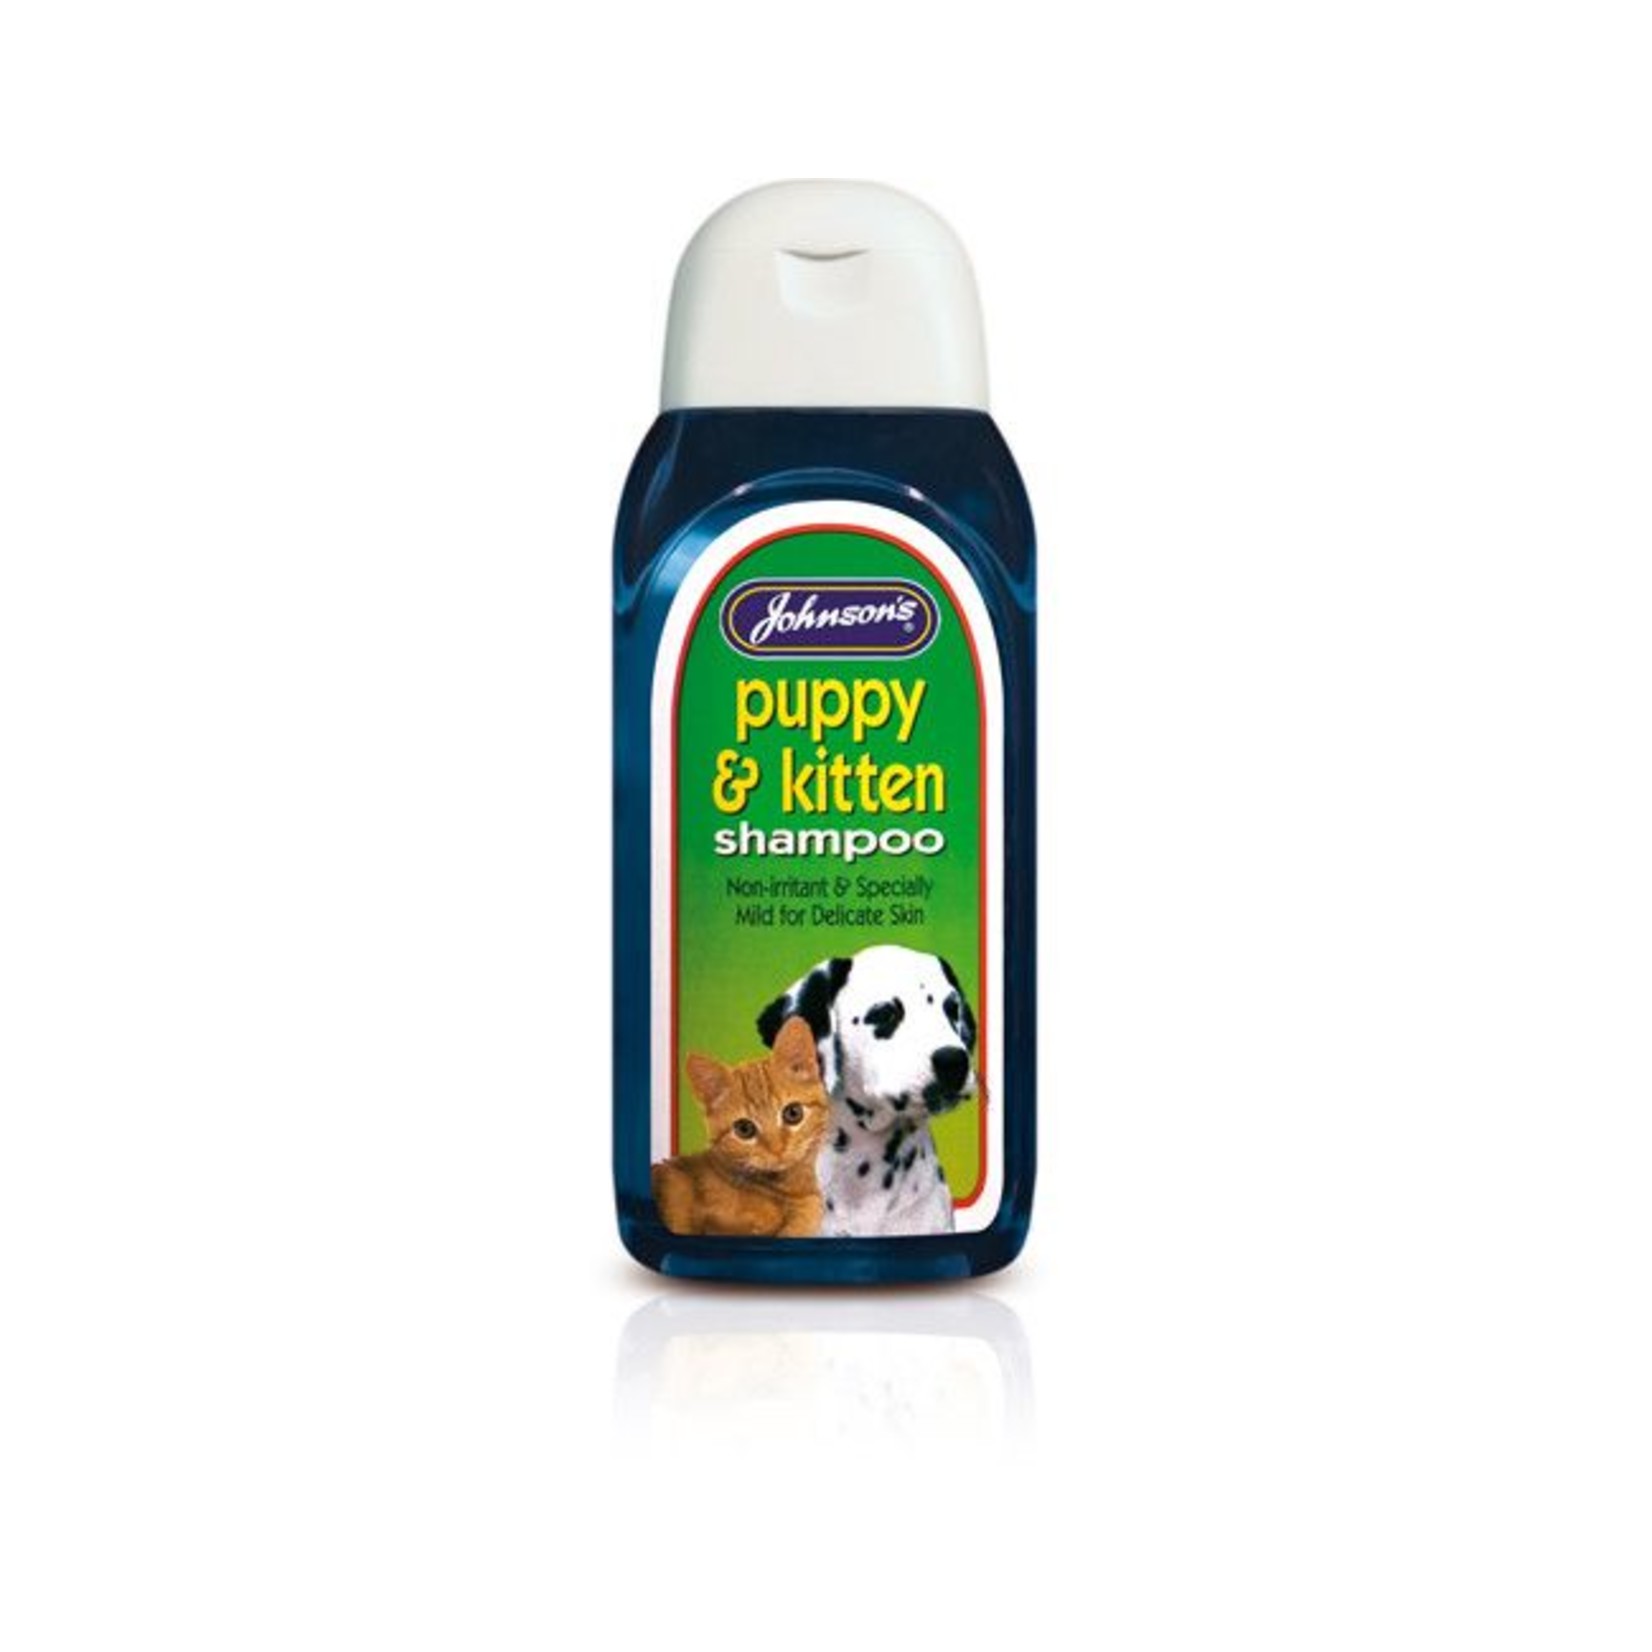 Johnson's Veterinary Puppy & Kitten Shampoo for Delicate Skin, 200ml